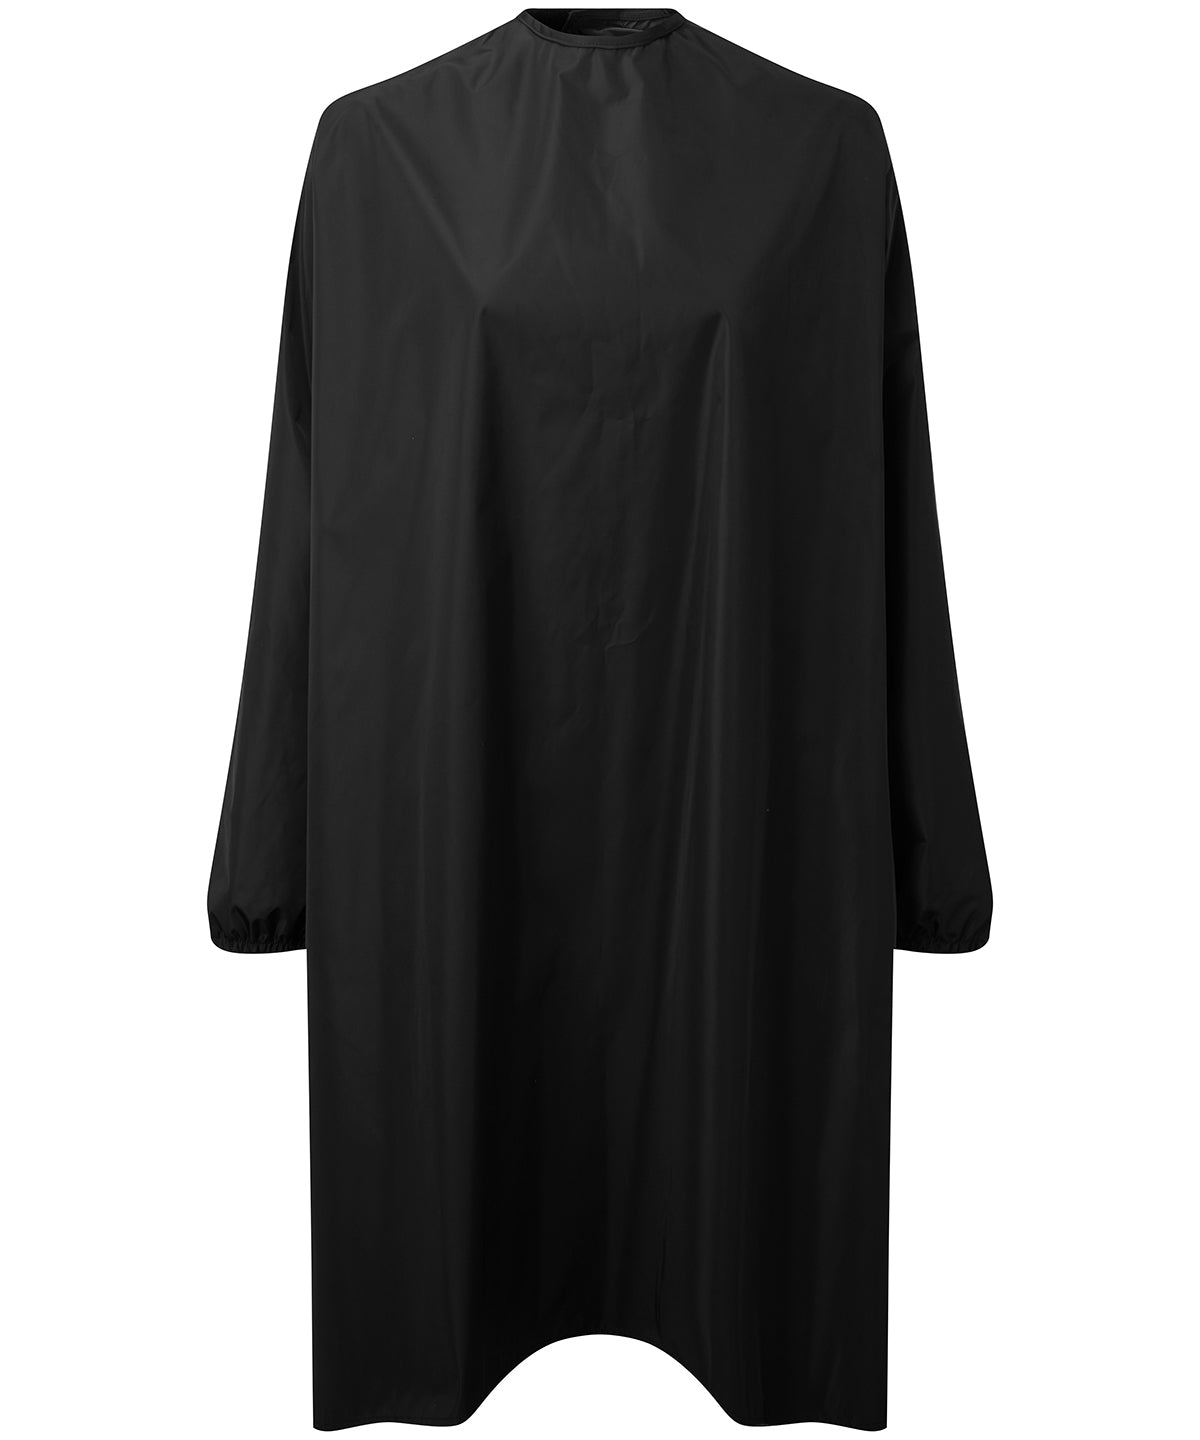 Kjólar - Long Sleeve Waterproof Salon Gown